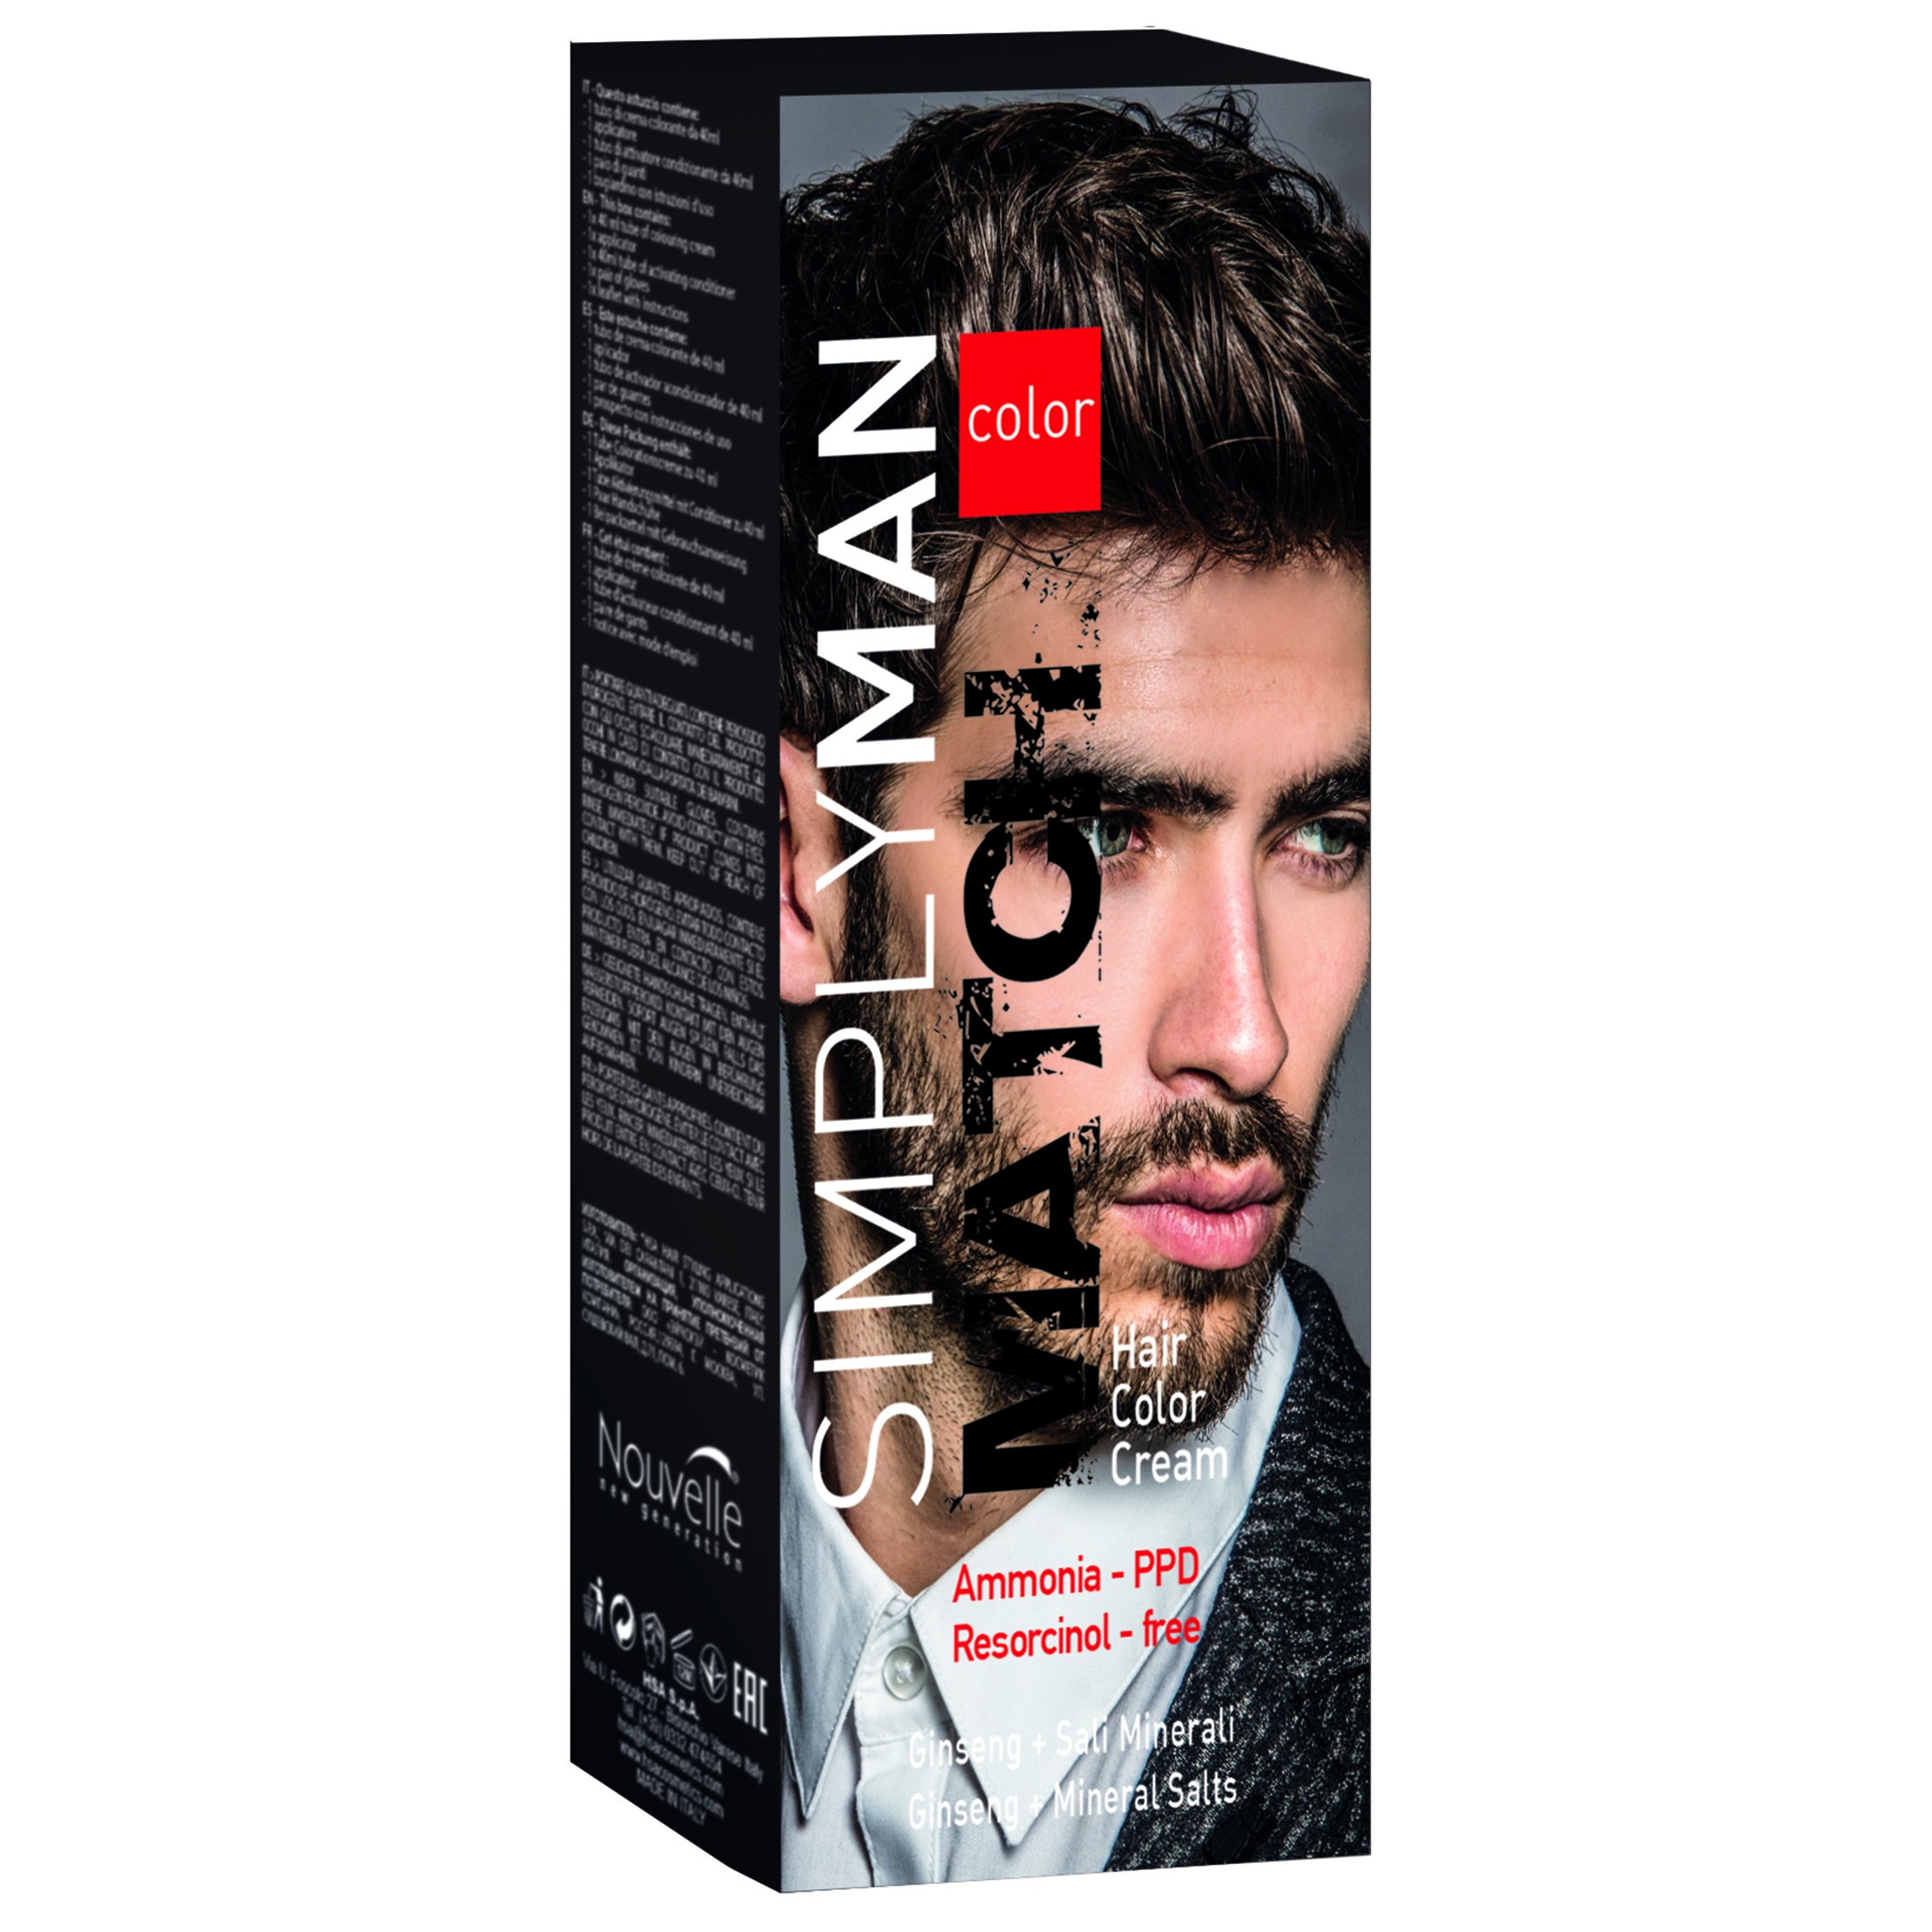 Simply Man Hair Dye Kit - Light Brown | INDERWEAR